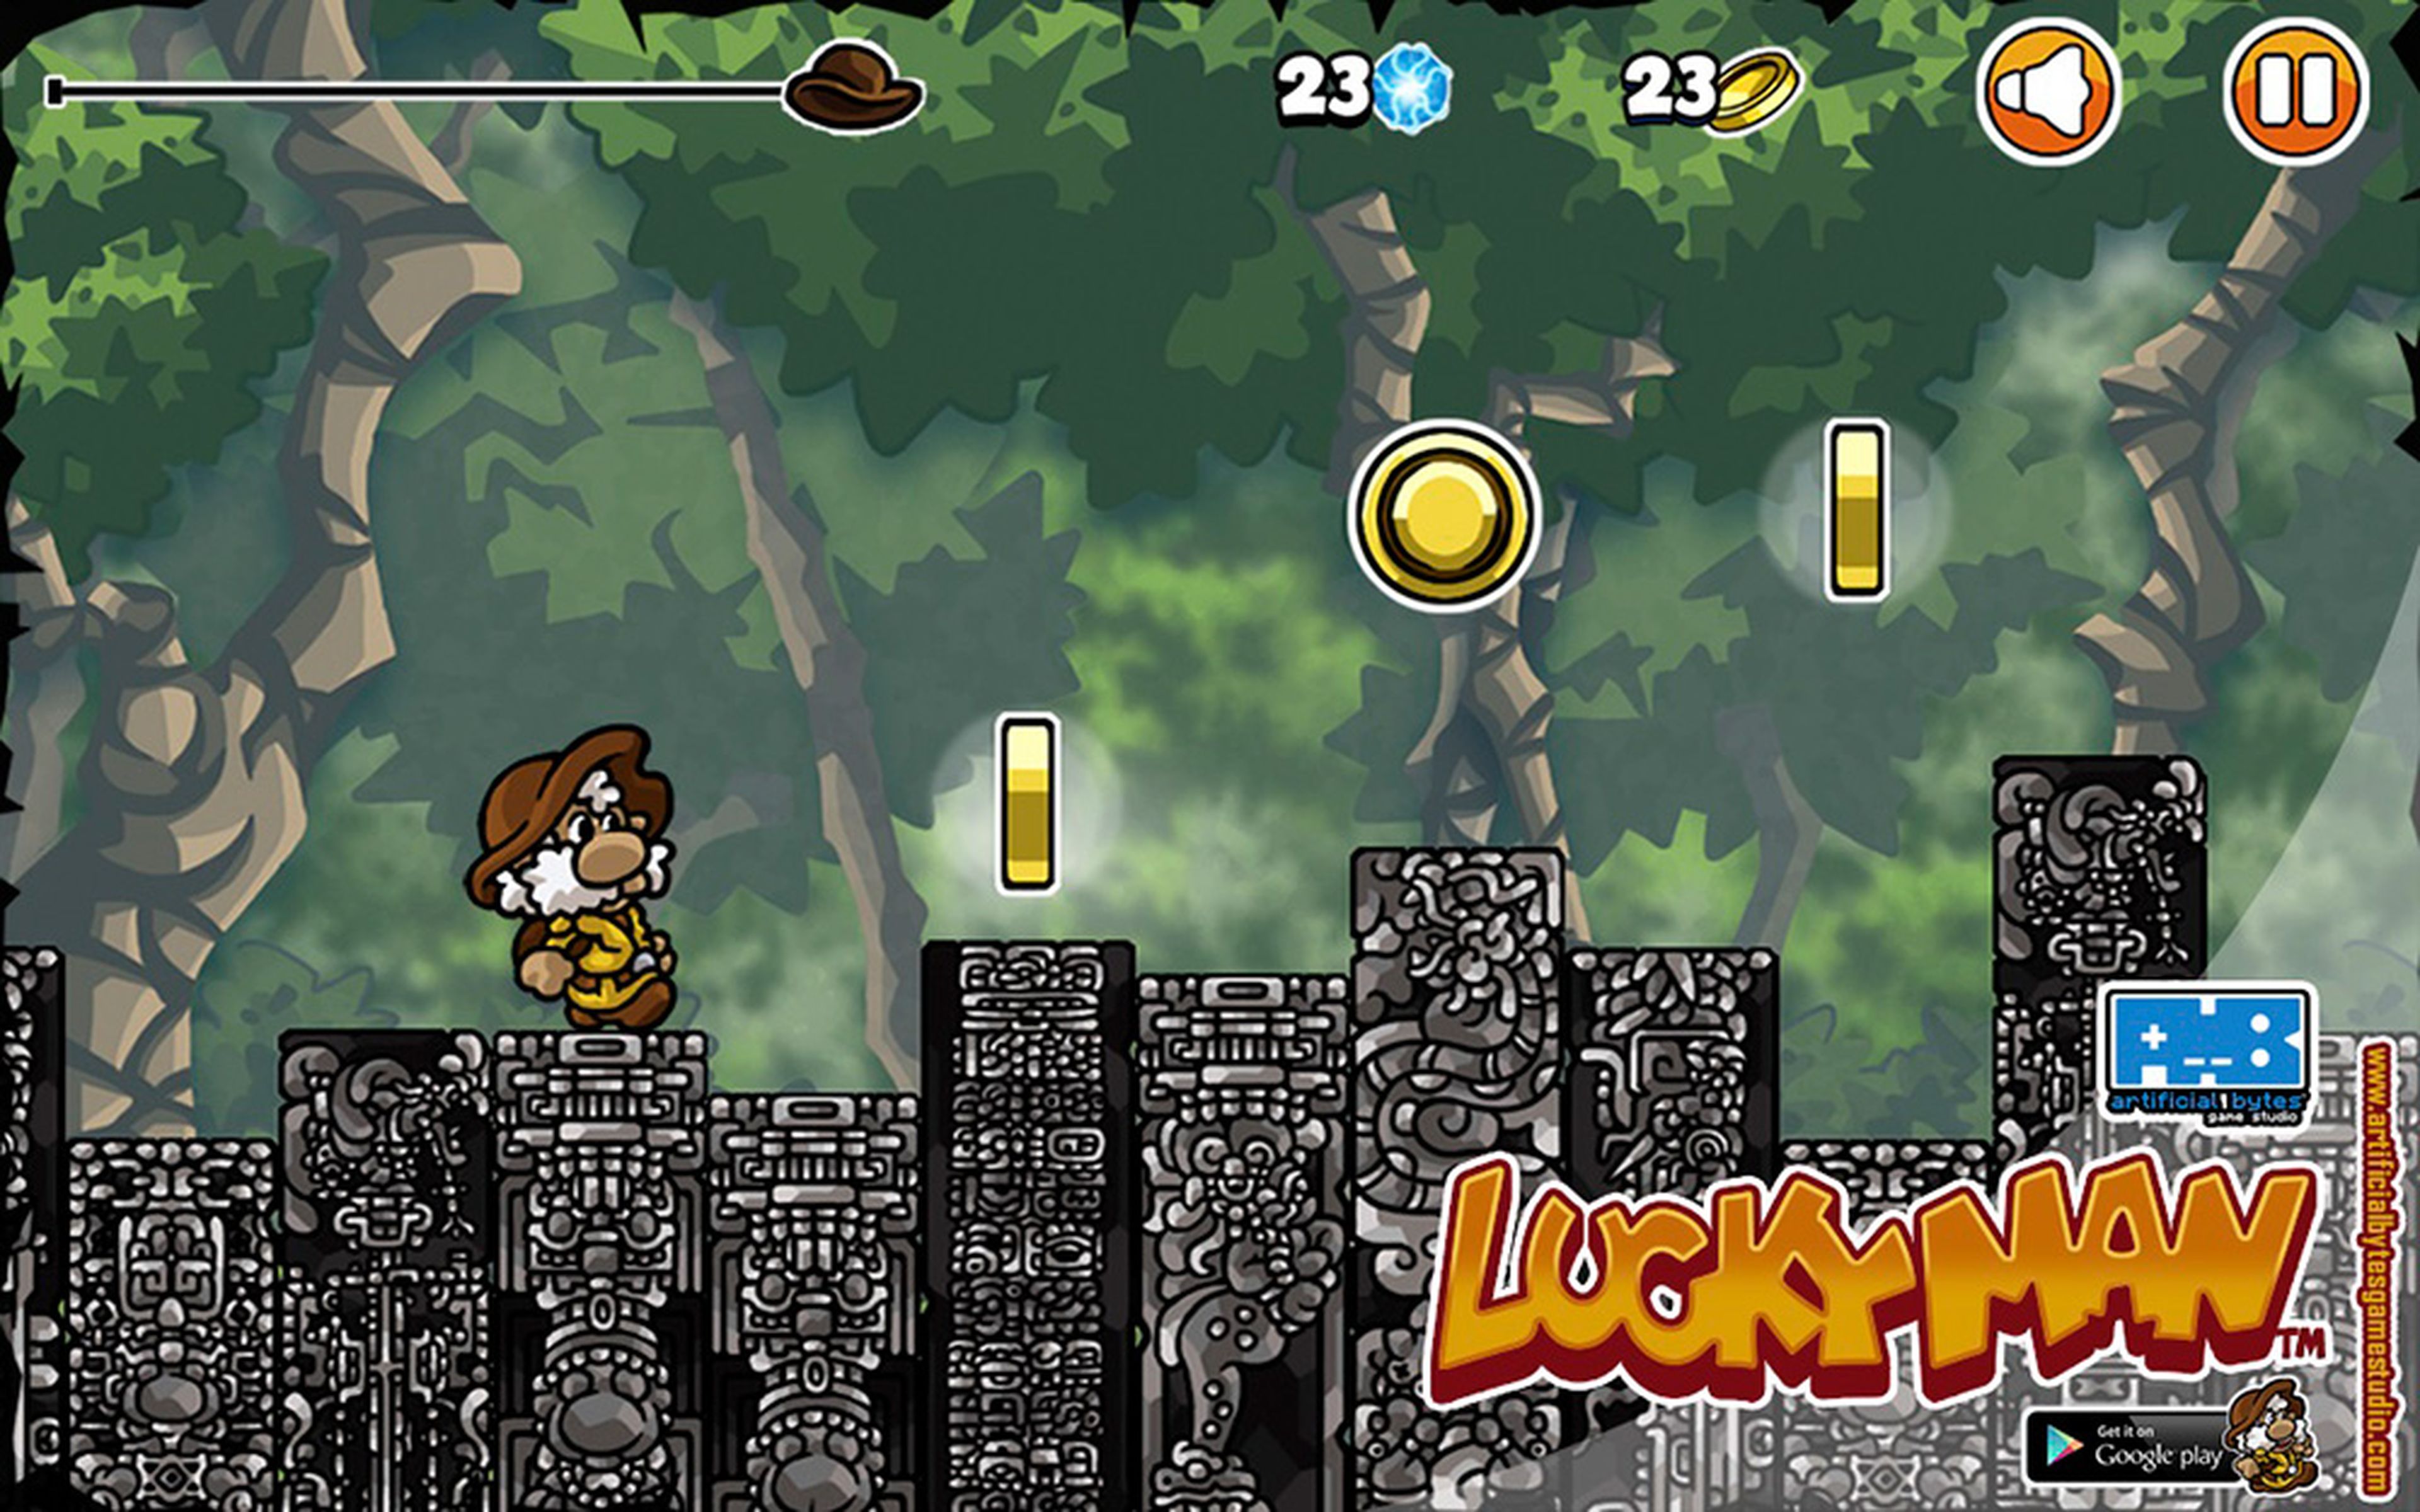 En Luckyman controlamos el escenario para ayudar al protagonista a llegar hasta el final del nivel.